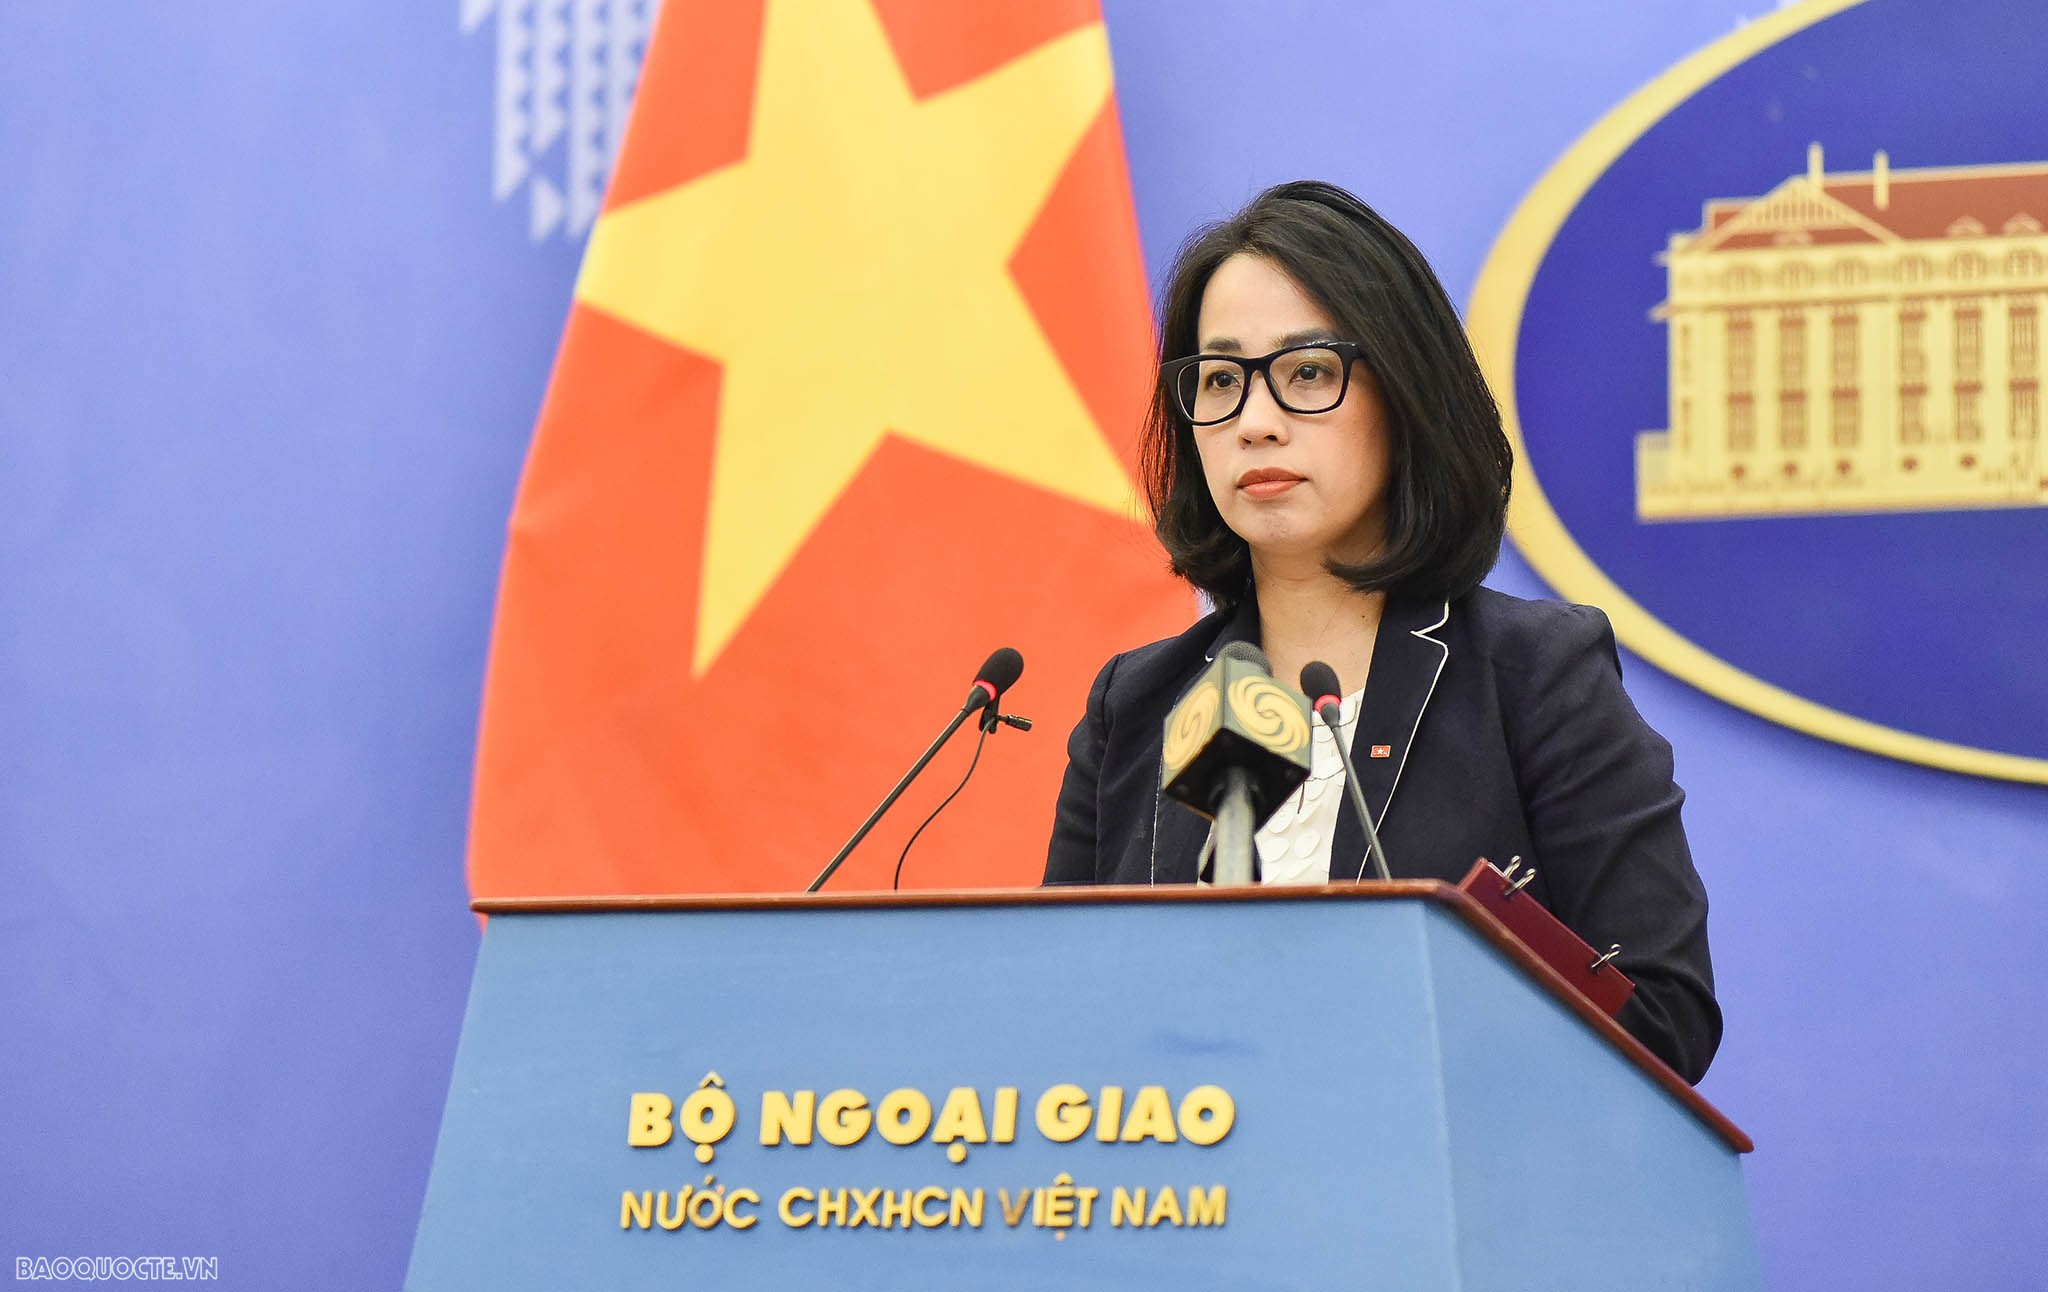 Vietnam objects to Taiwan’s live-fire drills in Ba Binh: Deputy Spokesperson